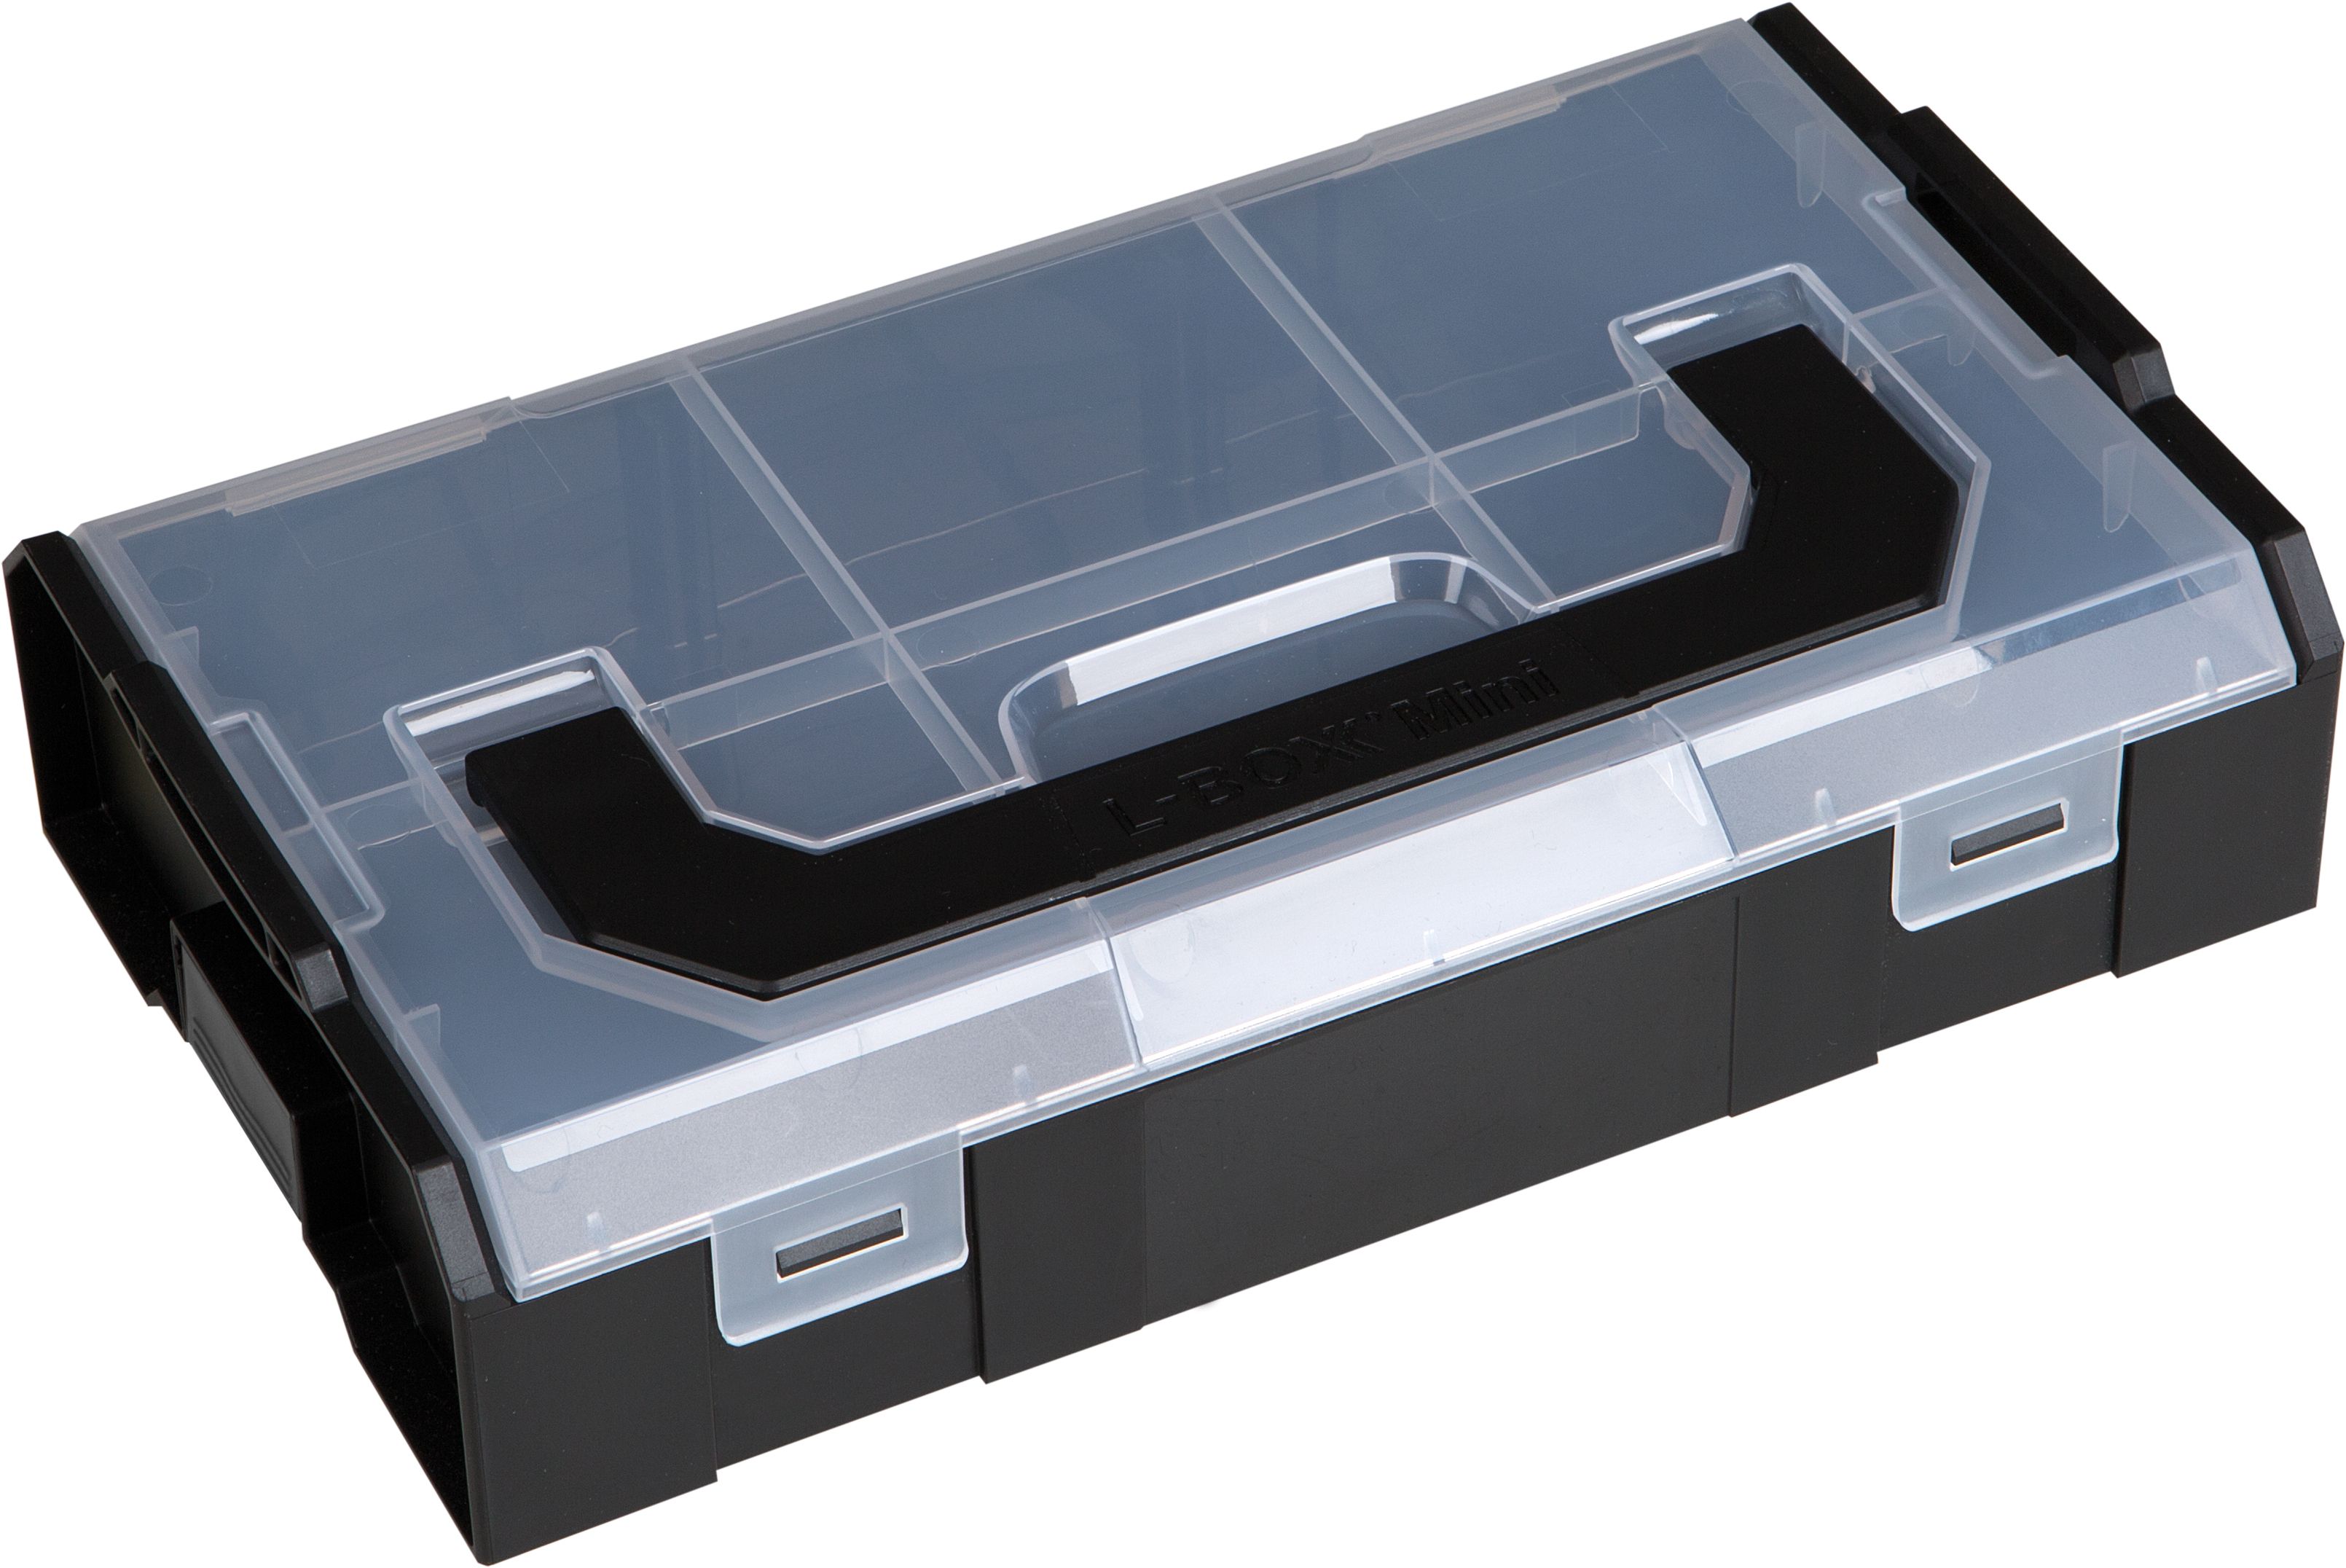 L-BOXX Mini transparenter Deckel BSS Volumen 1.5Liter b260 x t156 x h63, 6100000324 - Werkzeugkoffer,Sortimentskoffer,Behälter